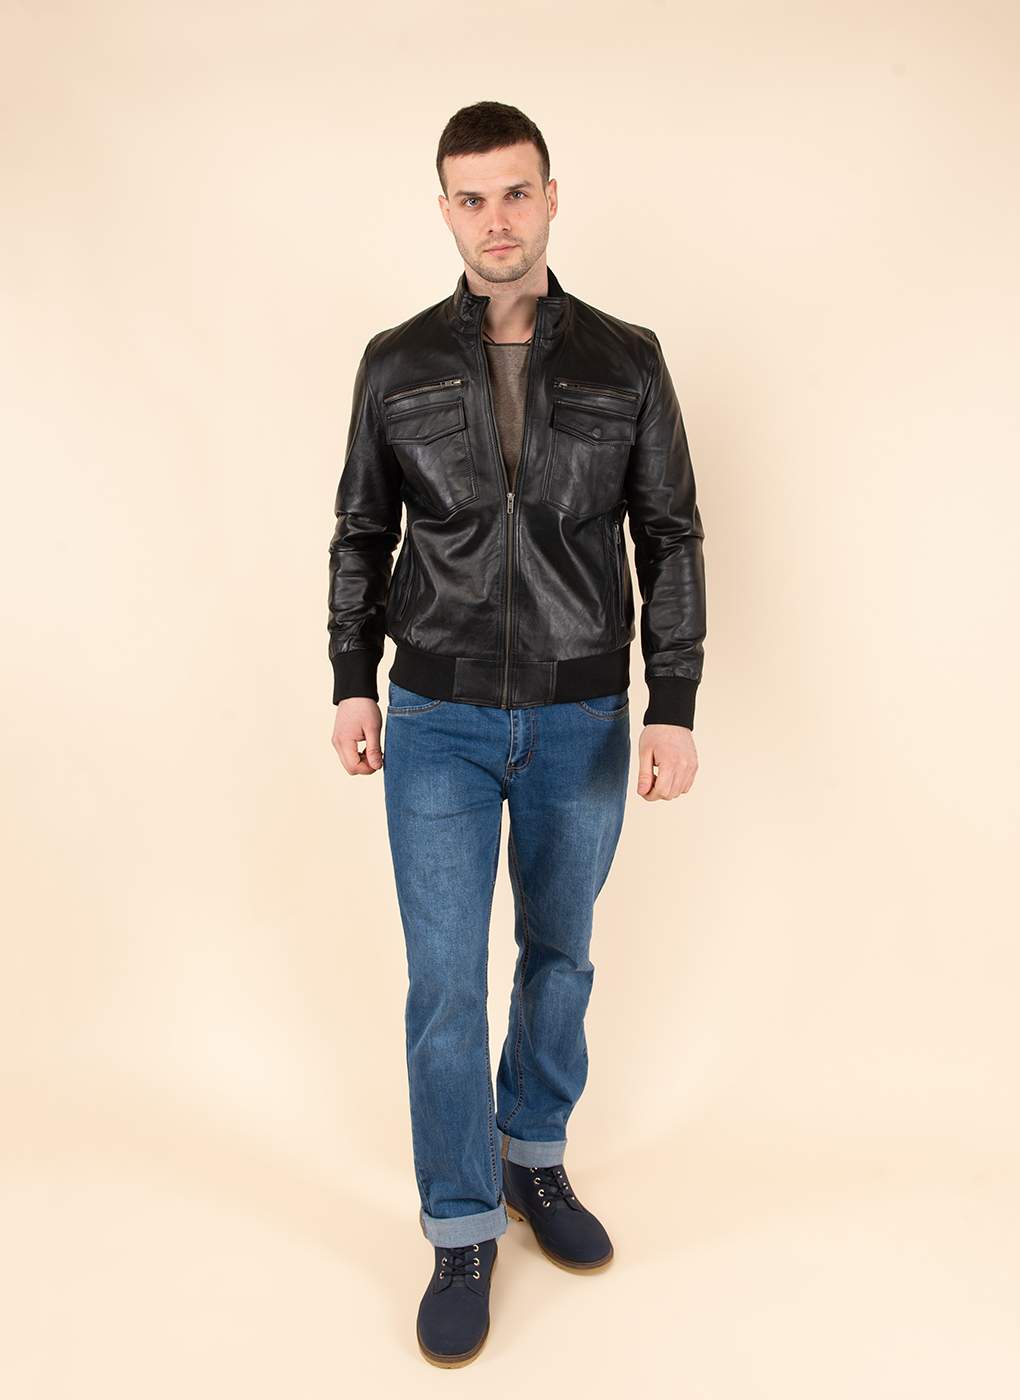 Кожаная куртка мужская Каляев 1581011 черная 54 RU